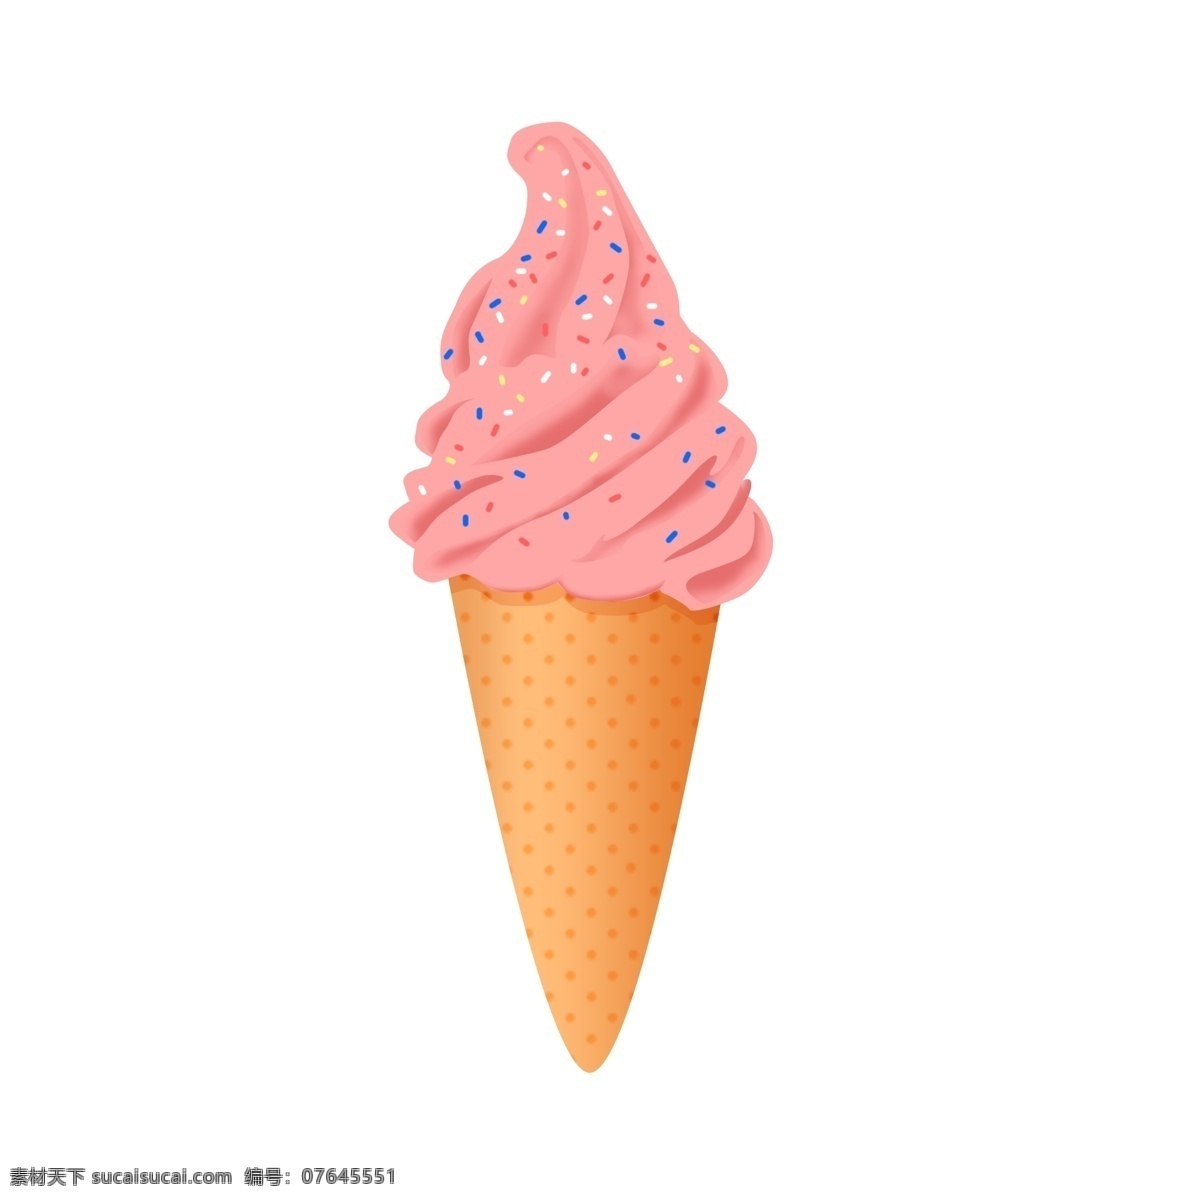 夏日 凉爽 草莓 冰激凌 元素 口味 粉色